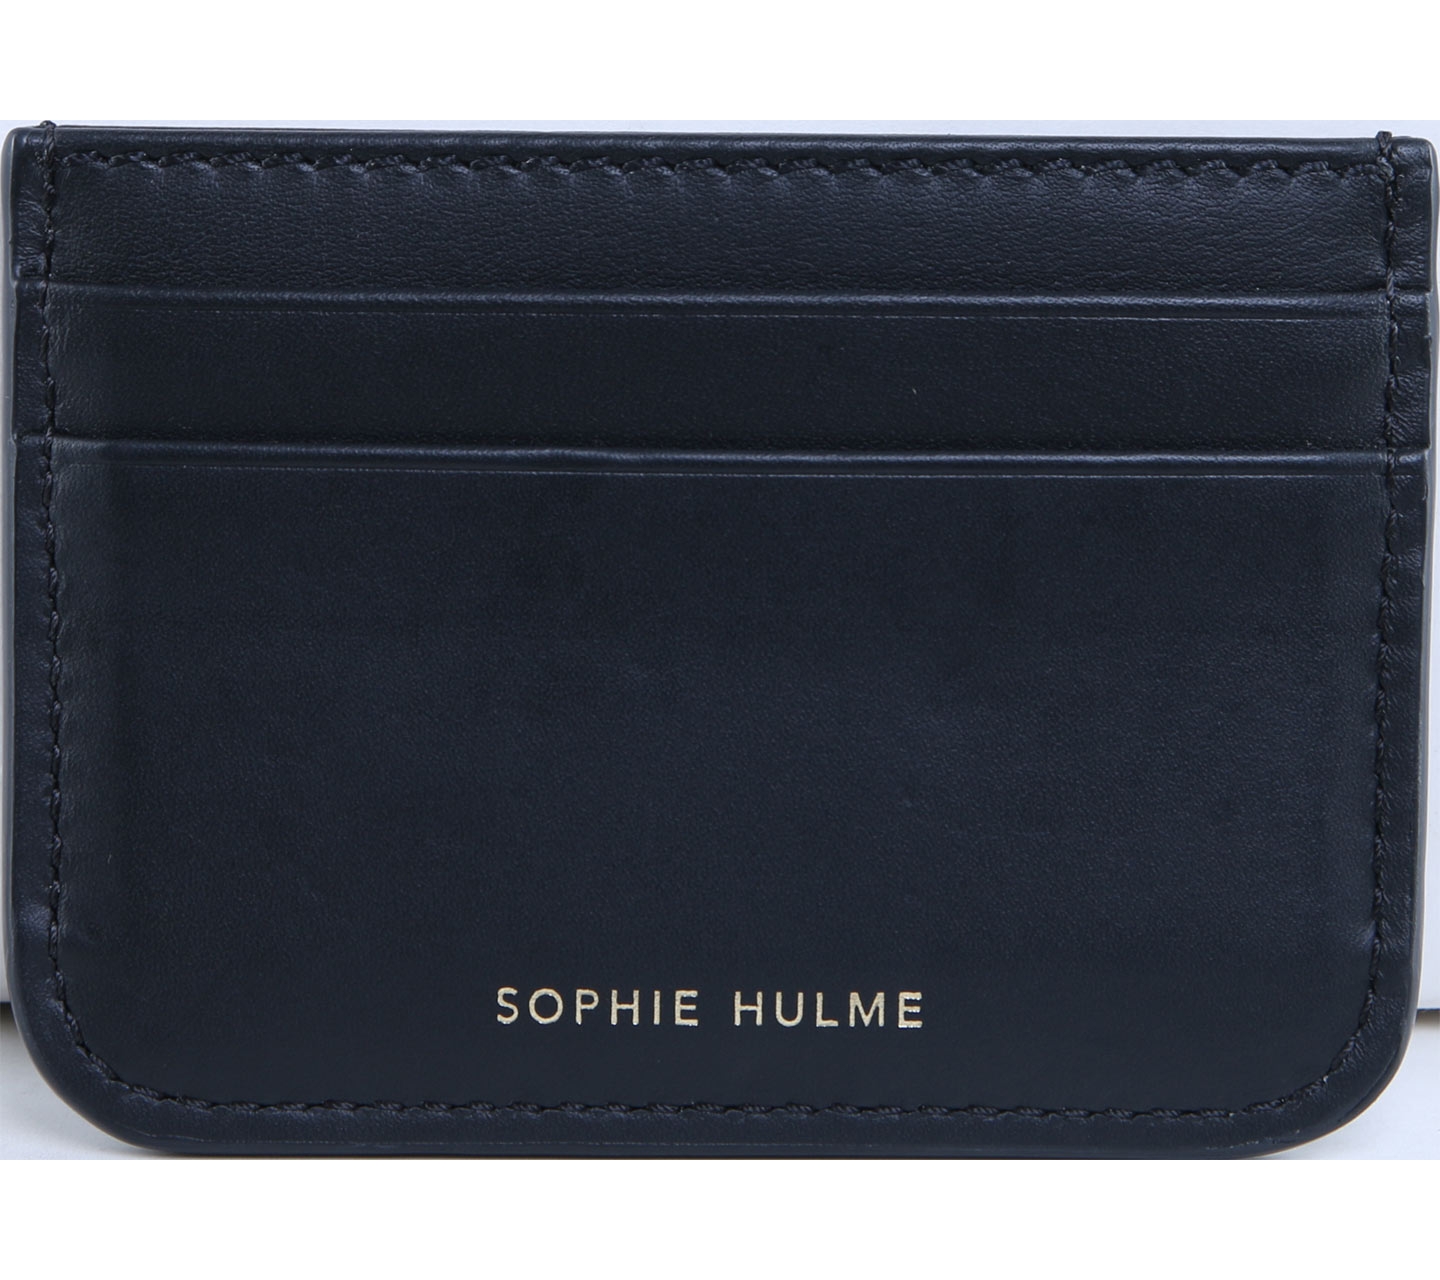 Sophie Hulme Black Card Holder Wallet